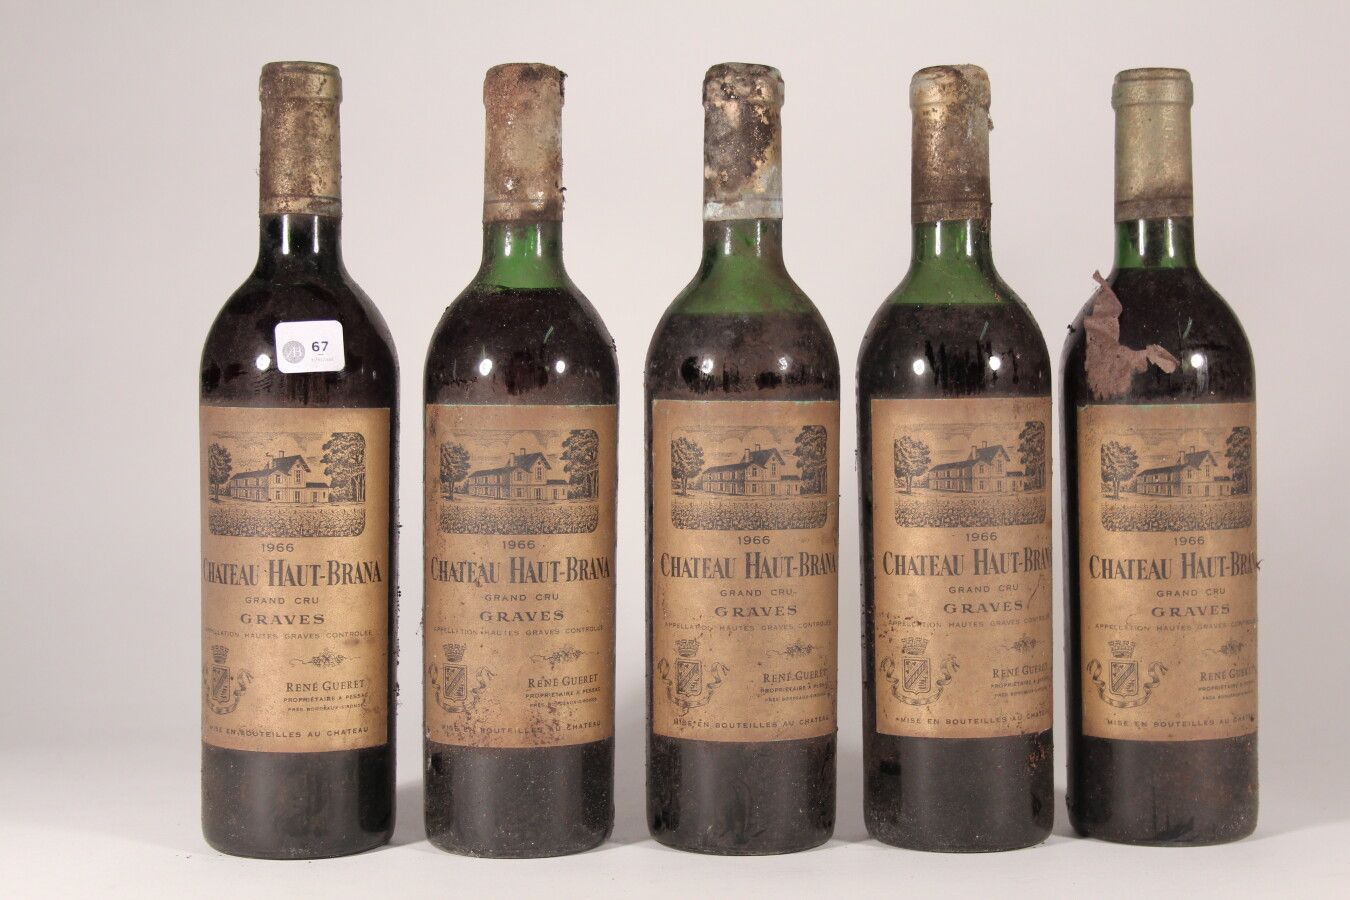 Null 1966 - Château Haut-Brana

Graves "R" - 5 botellas